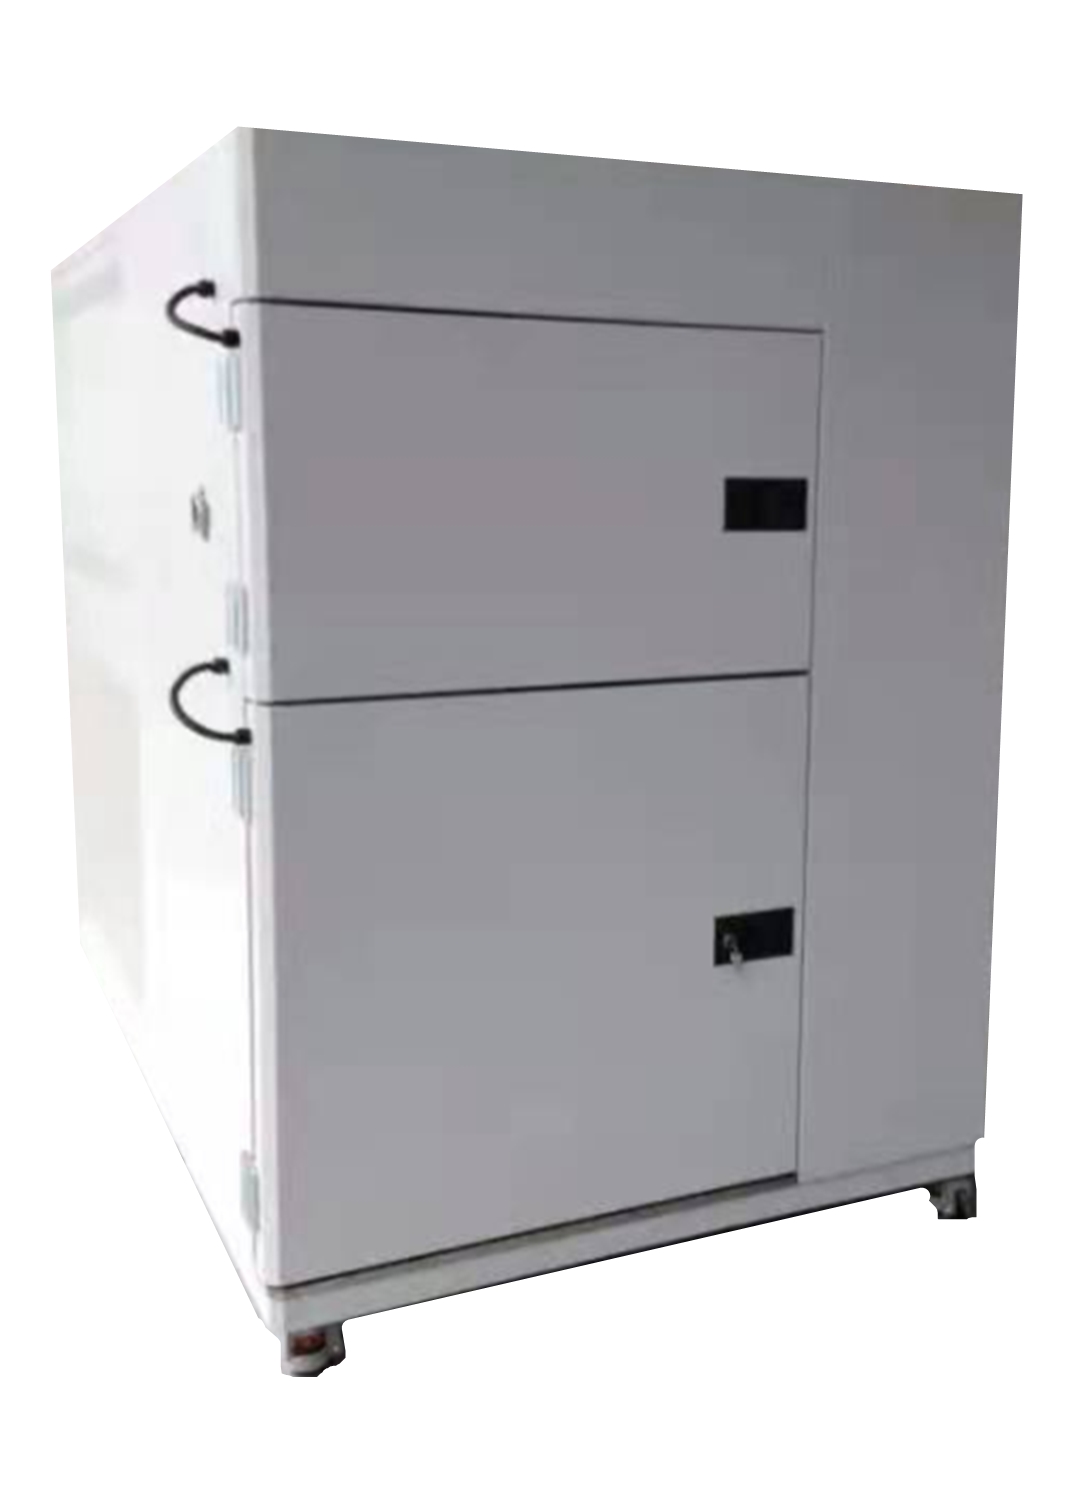 冷热冲击试验箱它能满足什么标准？